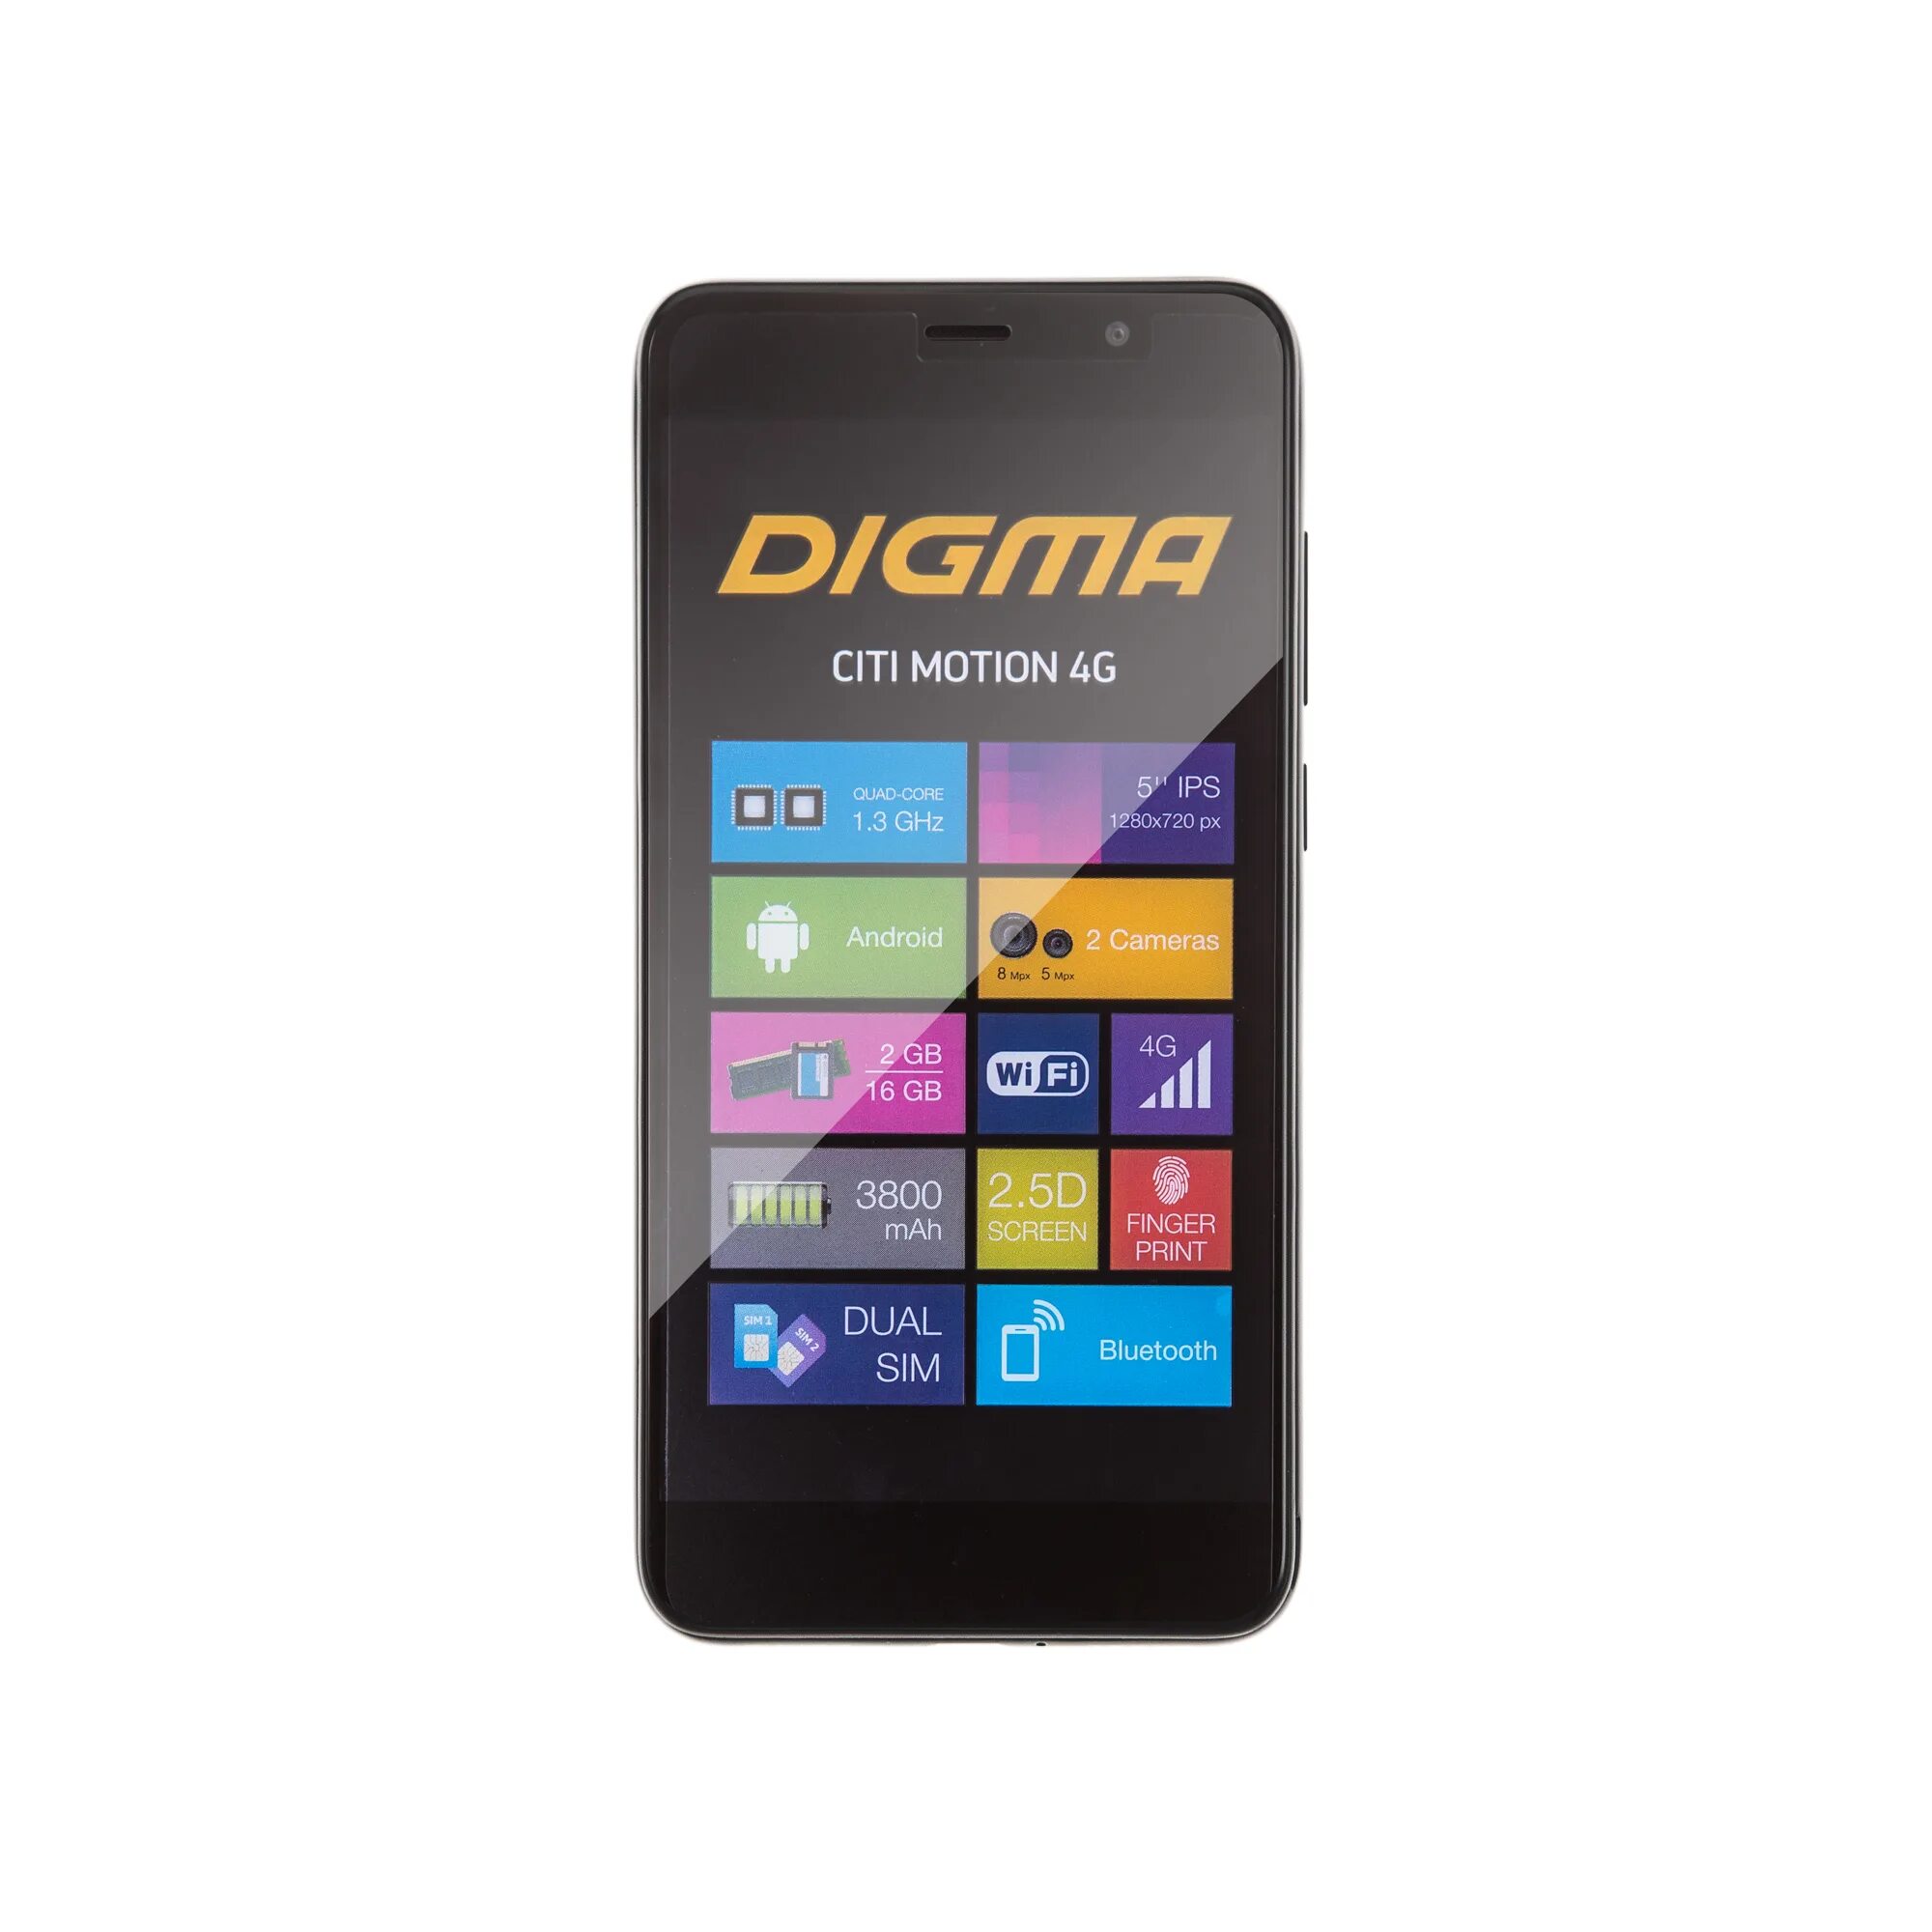 Digma city 4g. Мобильный телефон Digma а200. Дигма про 1800f 4g. Планшет Digma Pro 1800f. Digma Pro 1800f разъем.